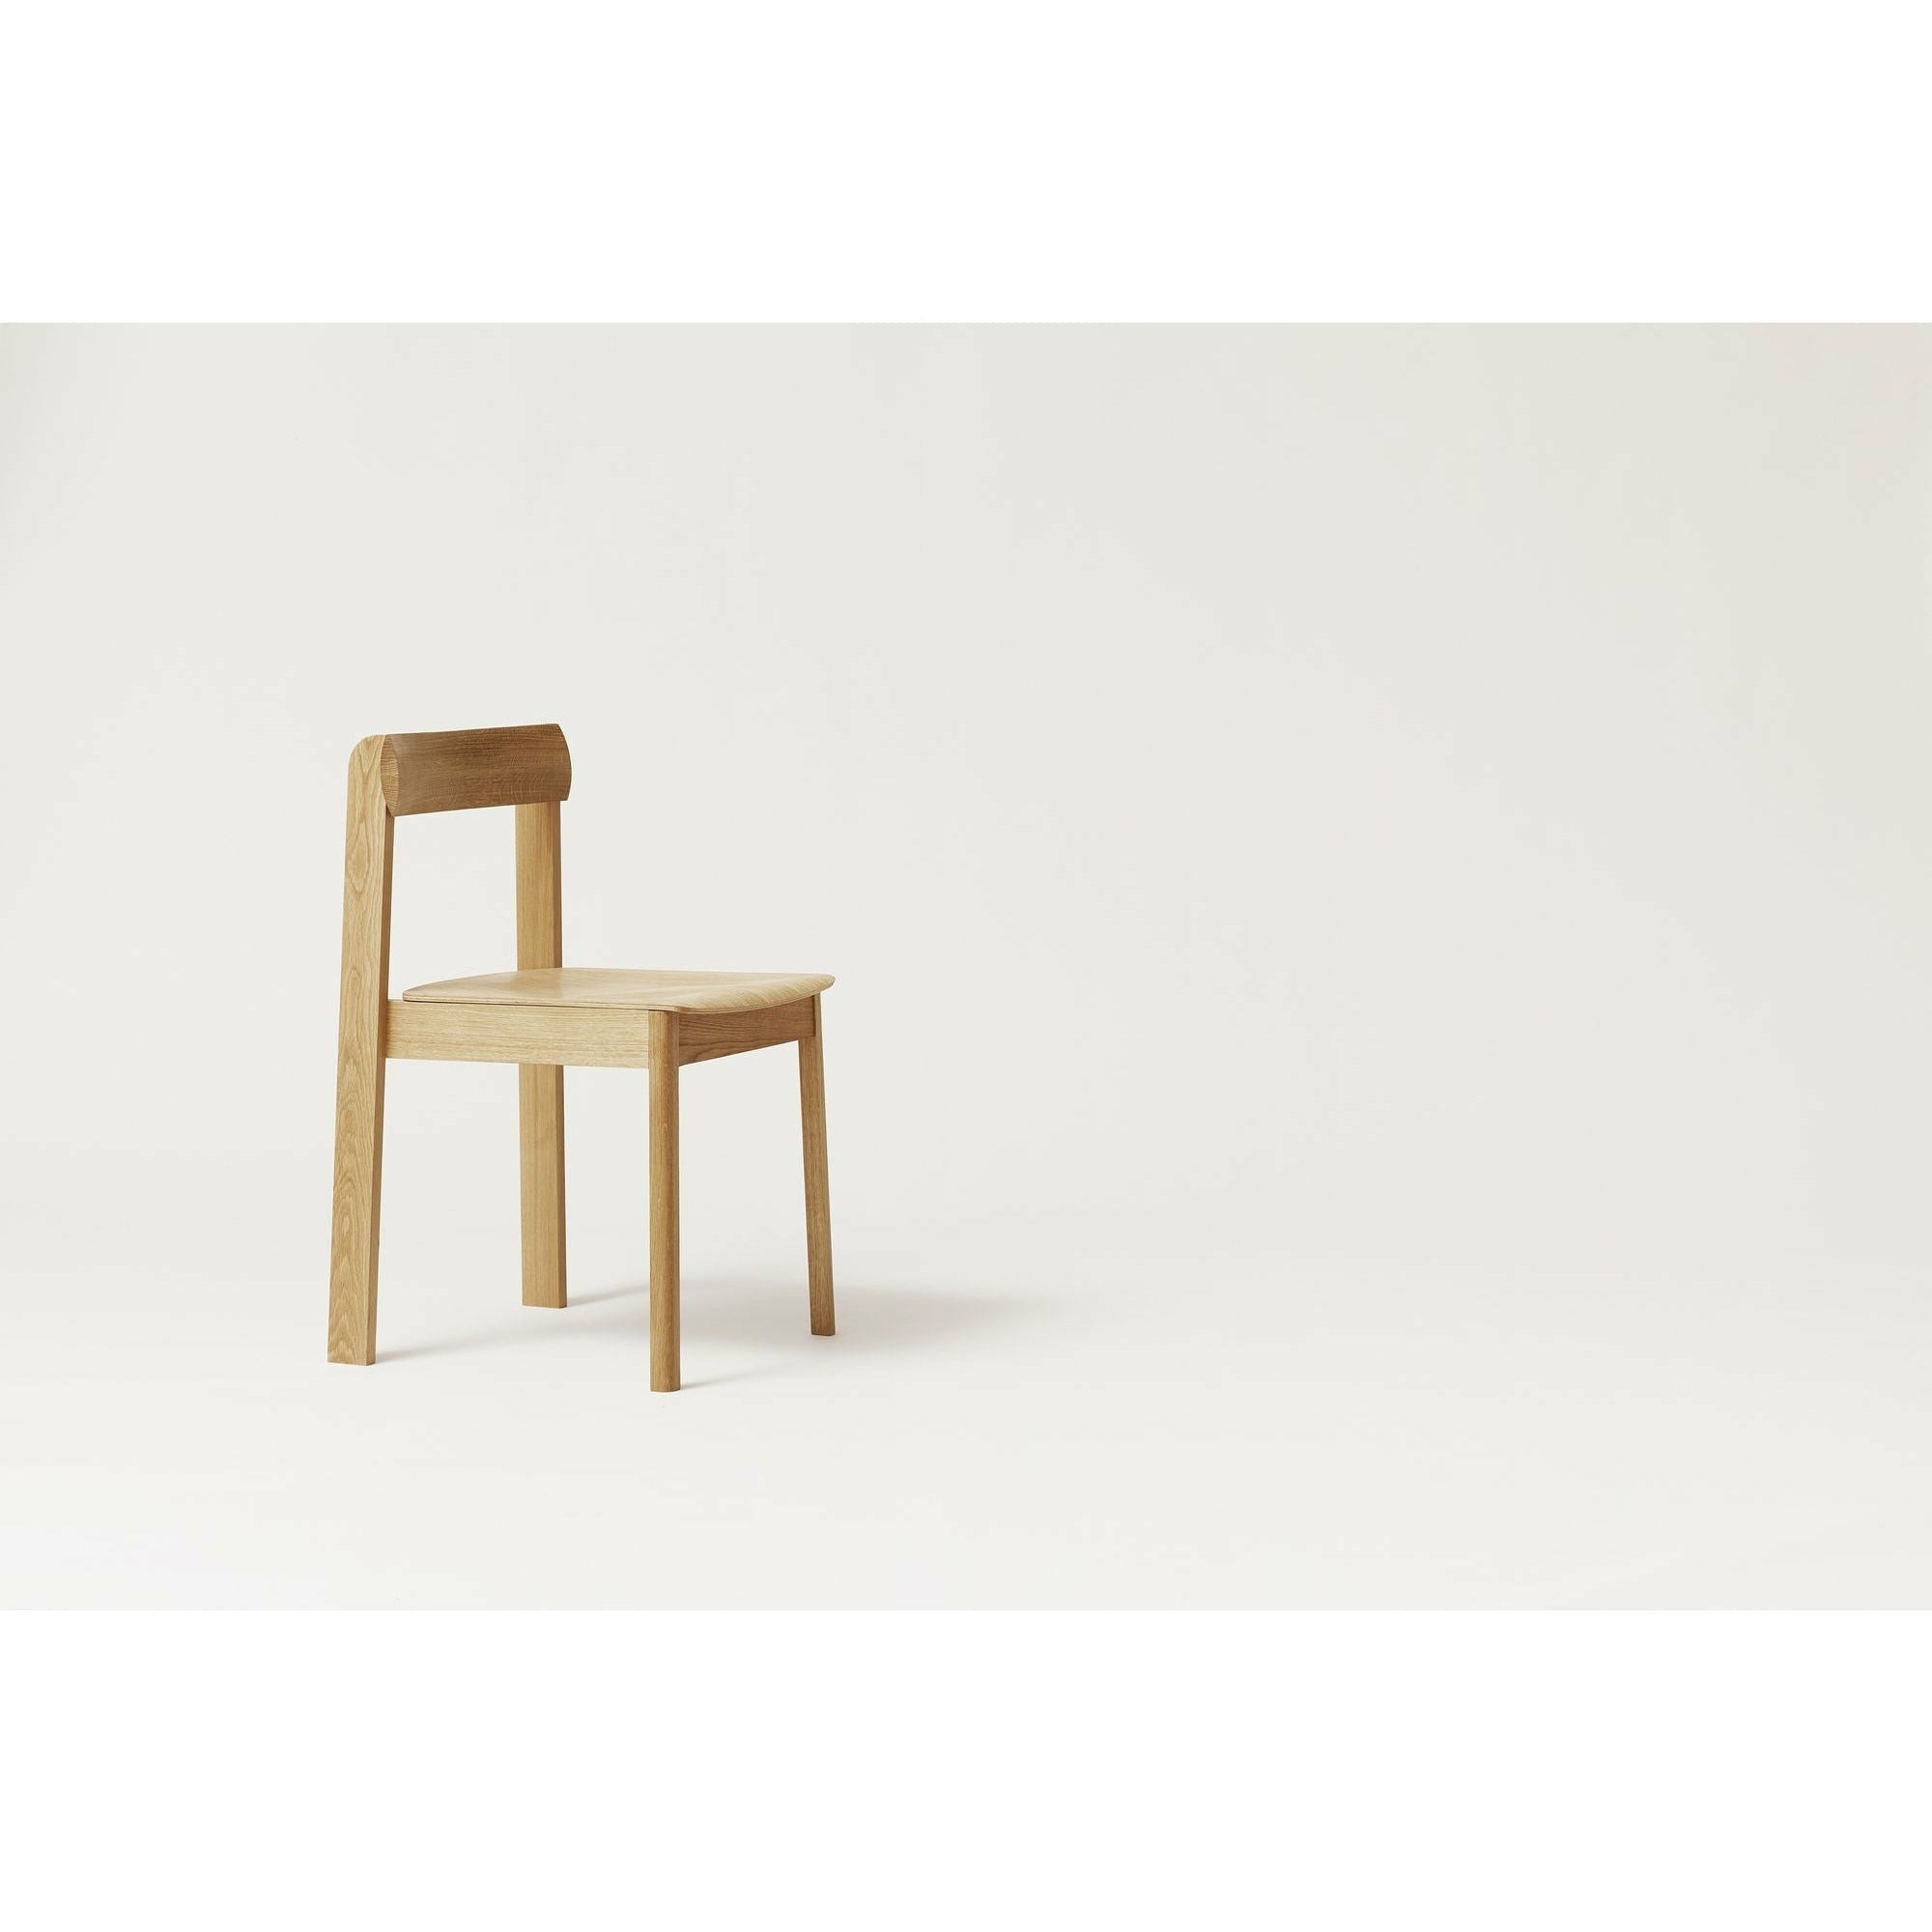 Forma e perfezionamento della sedia del progetto. Quercia